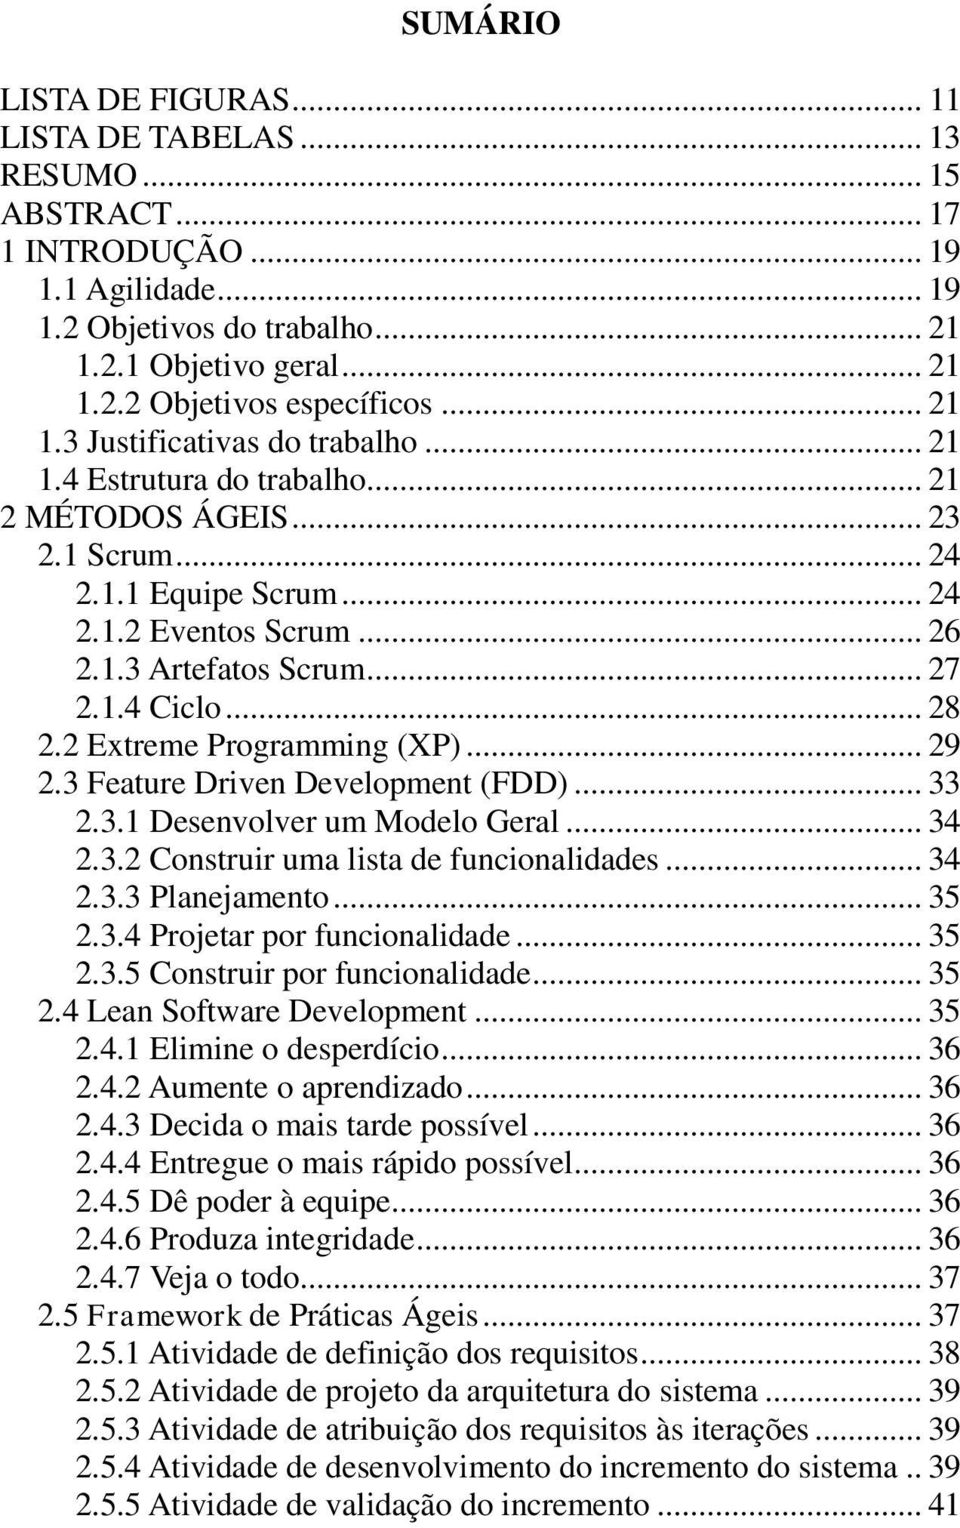 .. 28 2.2 Extreme Programming (XP)... 29 2.3 Feature Driven Development (FDD)... 33 2.3.1 Desenvolver um Modelo Geral... 34 2.3.2 Construir uma lista de funcionalidades... 34 2.3.3 Planejamento... 35 2.